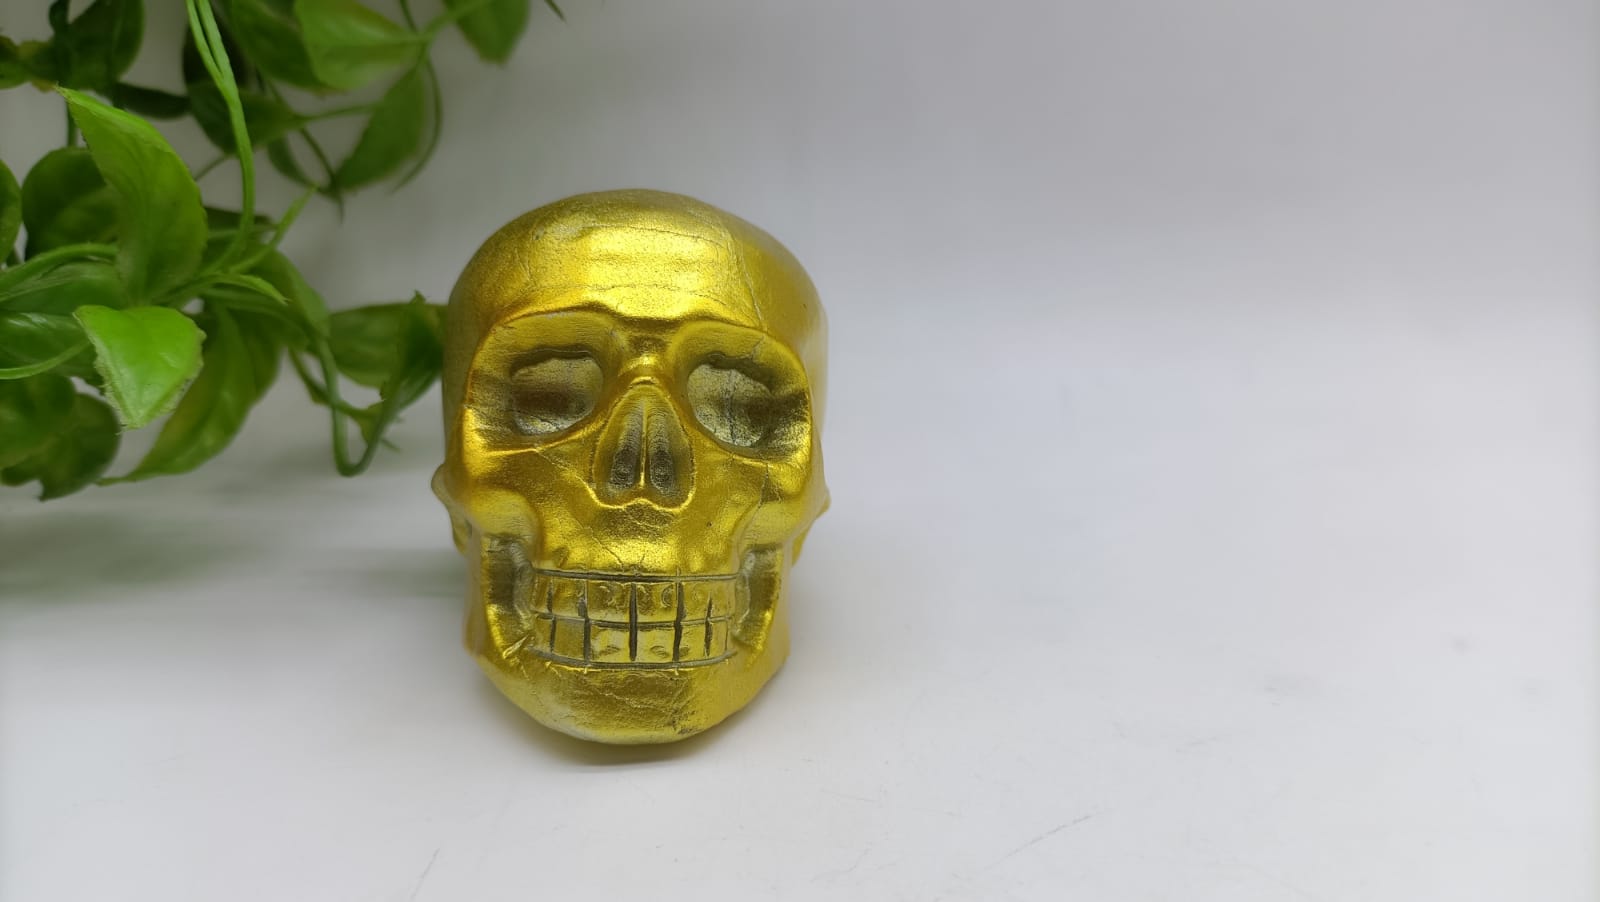 Golden Aura Skull 547g 8x6x5cm

